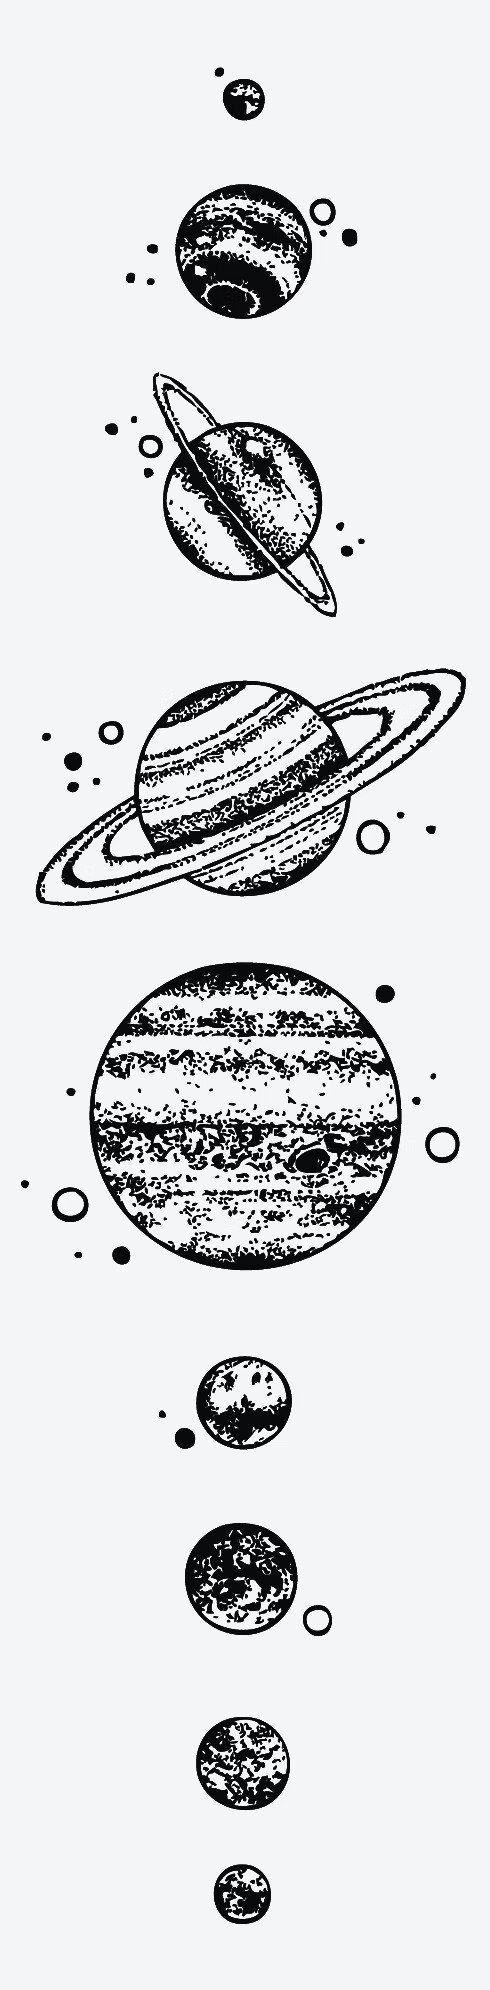 星球纹身贴纸